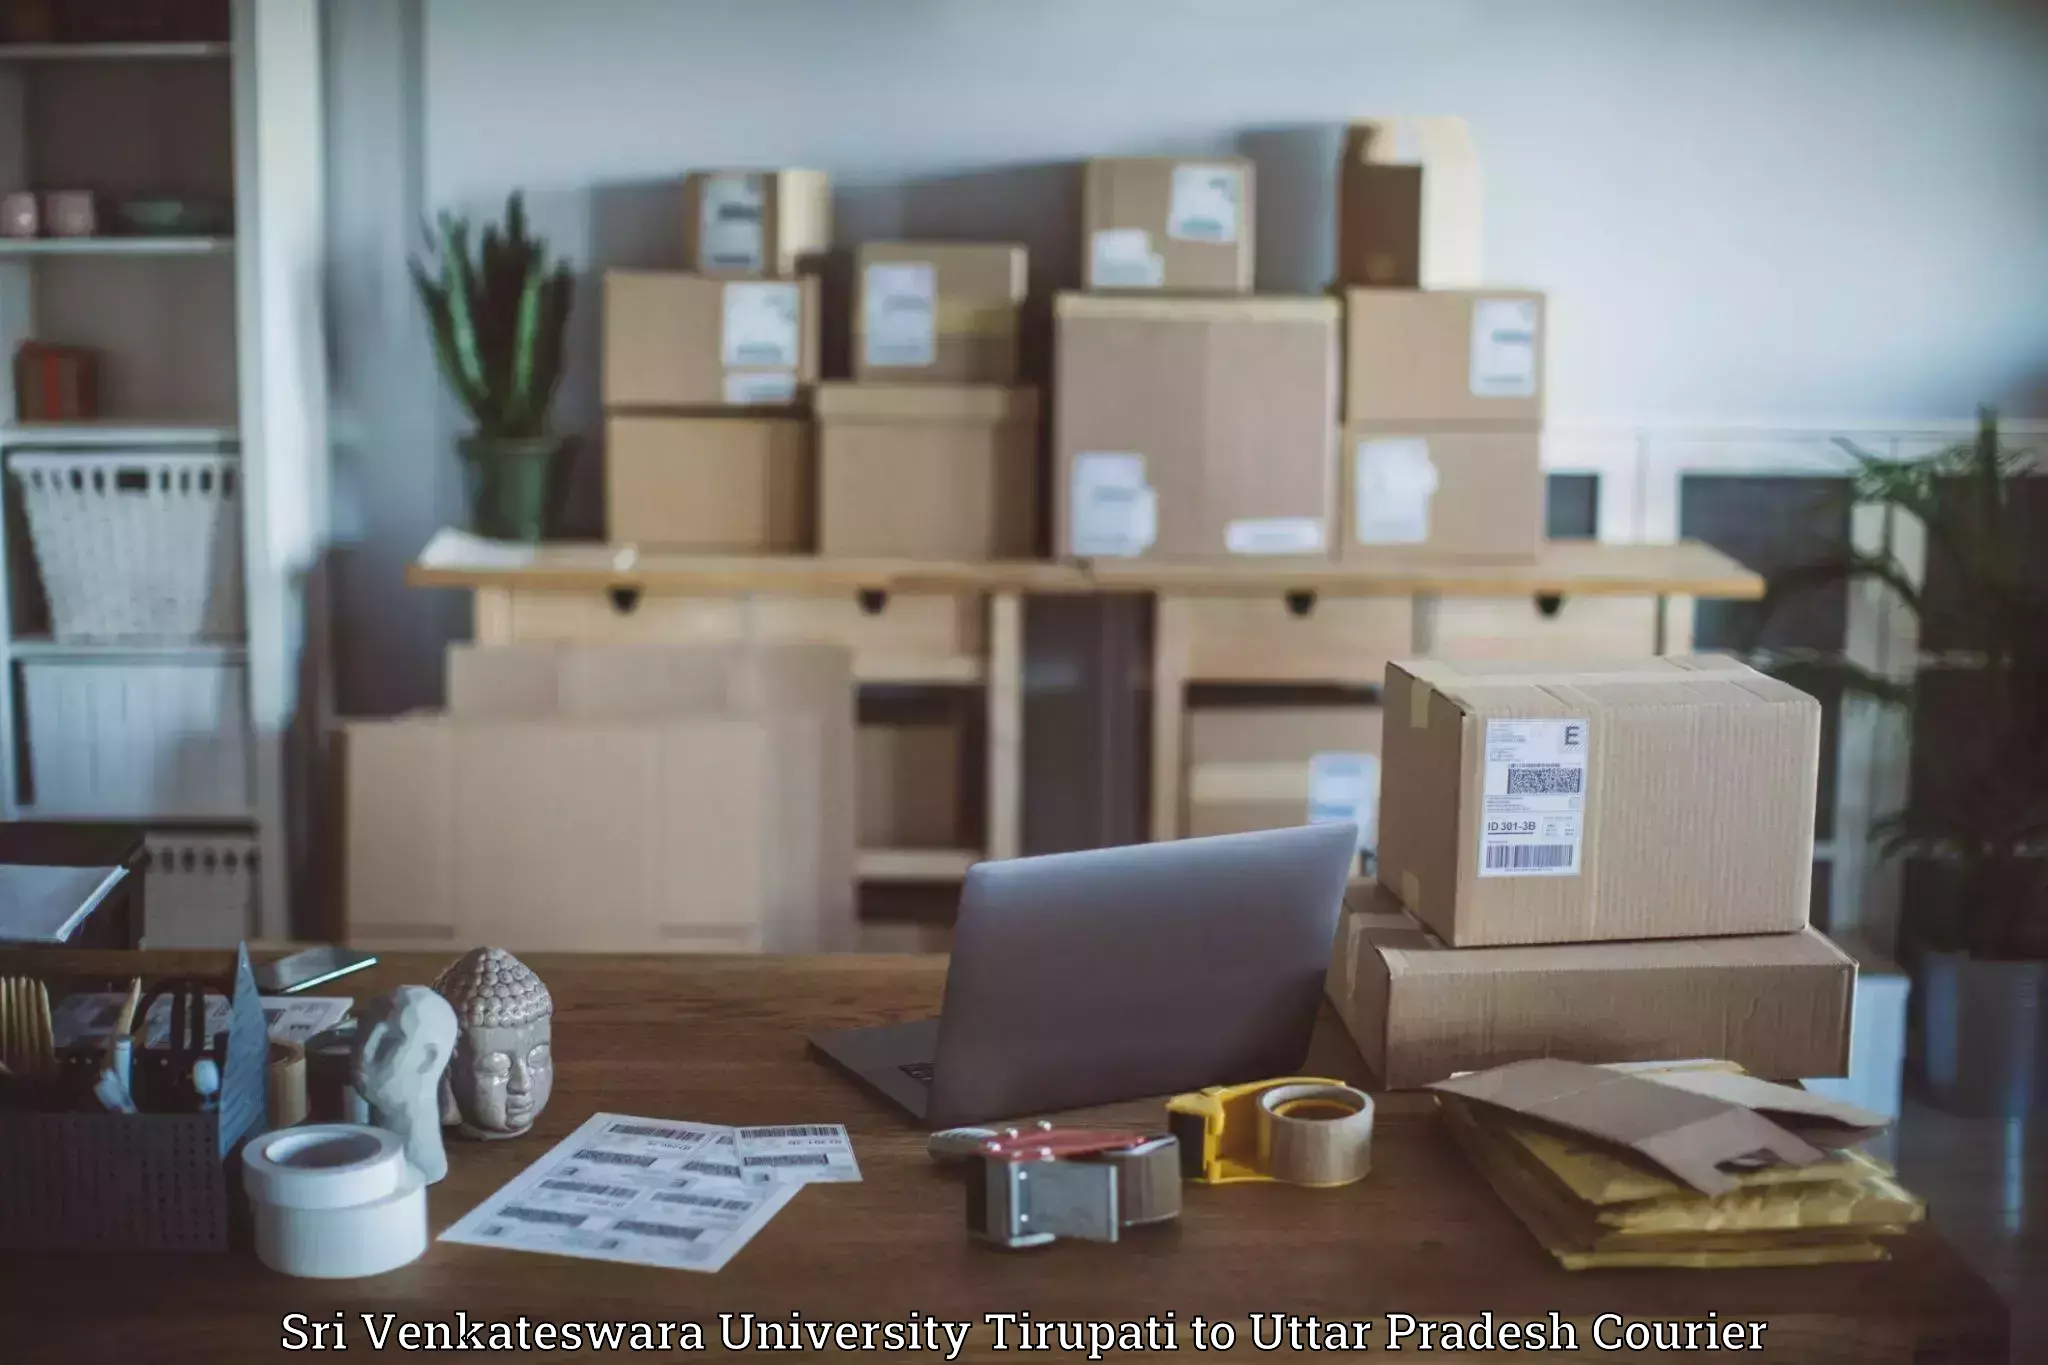 Specialized courier services Sri Venkateswara University Tirupati to Aunrihar